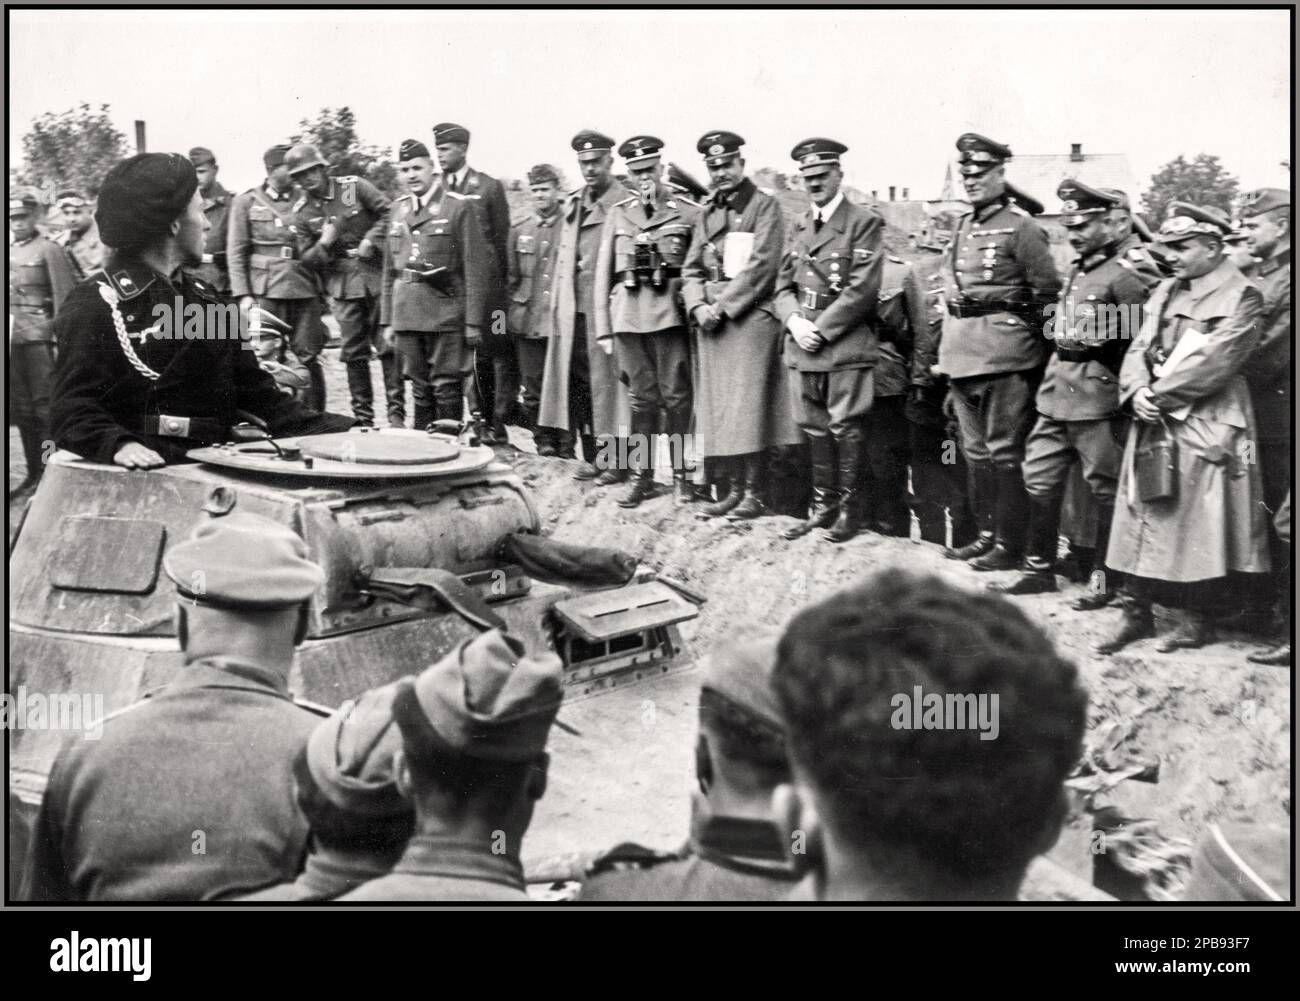 POLOGNE INVASION DE L'OCCUPATION NAZIE visite d'Adolf Hitler au corps blindé de 19th du général Heinz Guderian au début de la Seconde Guerre mondiale, Guderian a dirigé un corps blindé dans l'invasion de la Pologne. Défilé de troupes. Hitler (4th de la droite) regarde un commandant de réservoir de Panzer passant dans son réservoir 'PzKpfw I'. Aussi visible : le général Heinz Guderian (5th de droite) et Heinrich Himmler (7th de droite) ont représenté les personnes Heinz Guderian, Heinrich Himmler, Adolf Hitler Field Marshall Wilhelm Keitel Date septembre 1939 Banque D'Images